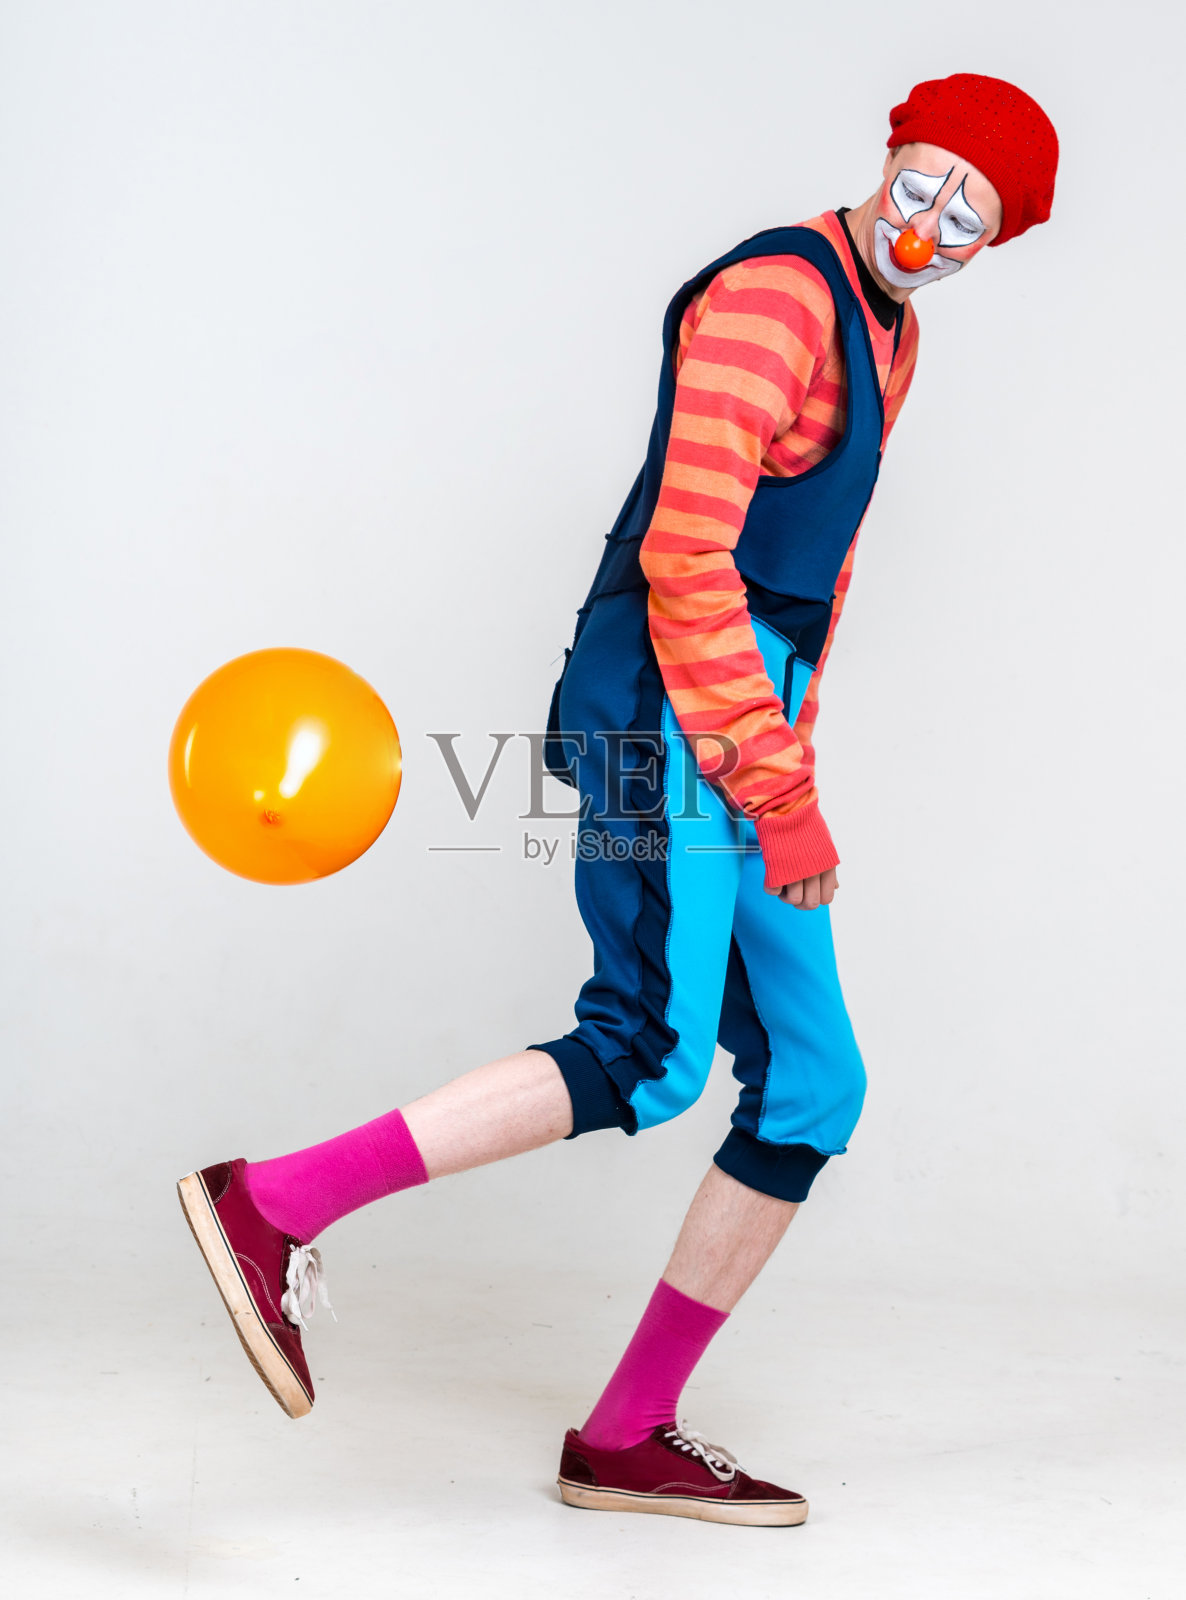 滑稽的小丑玩气球照片摄影图片